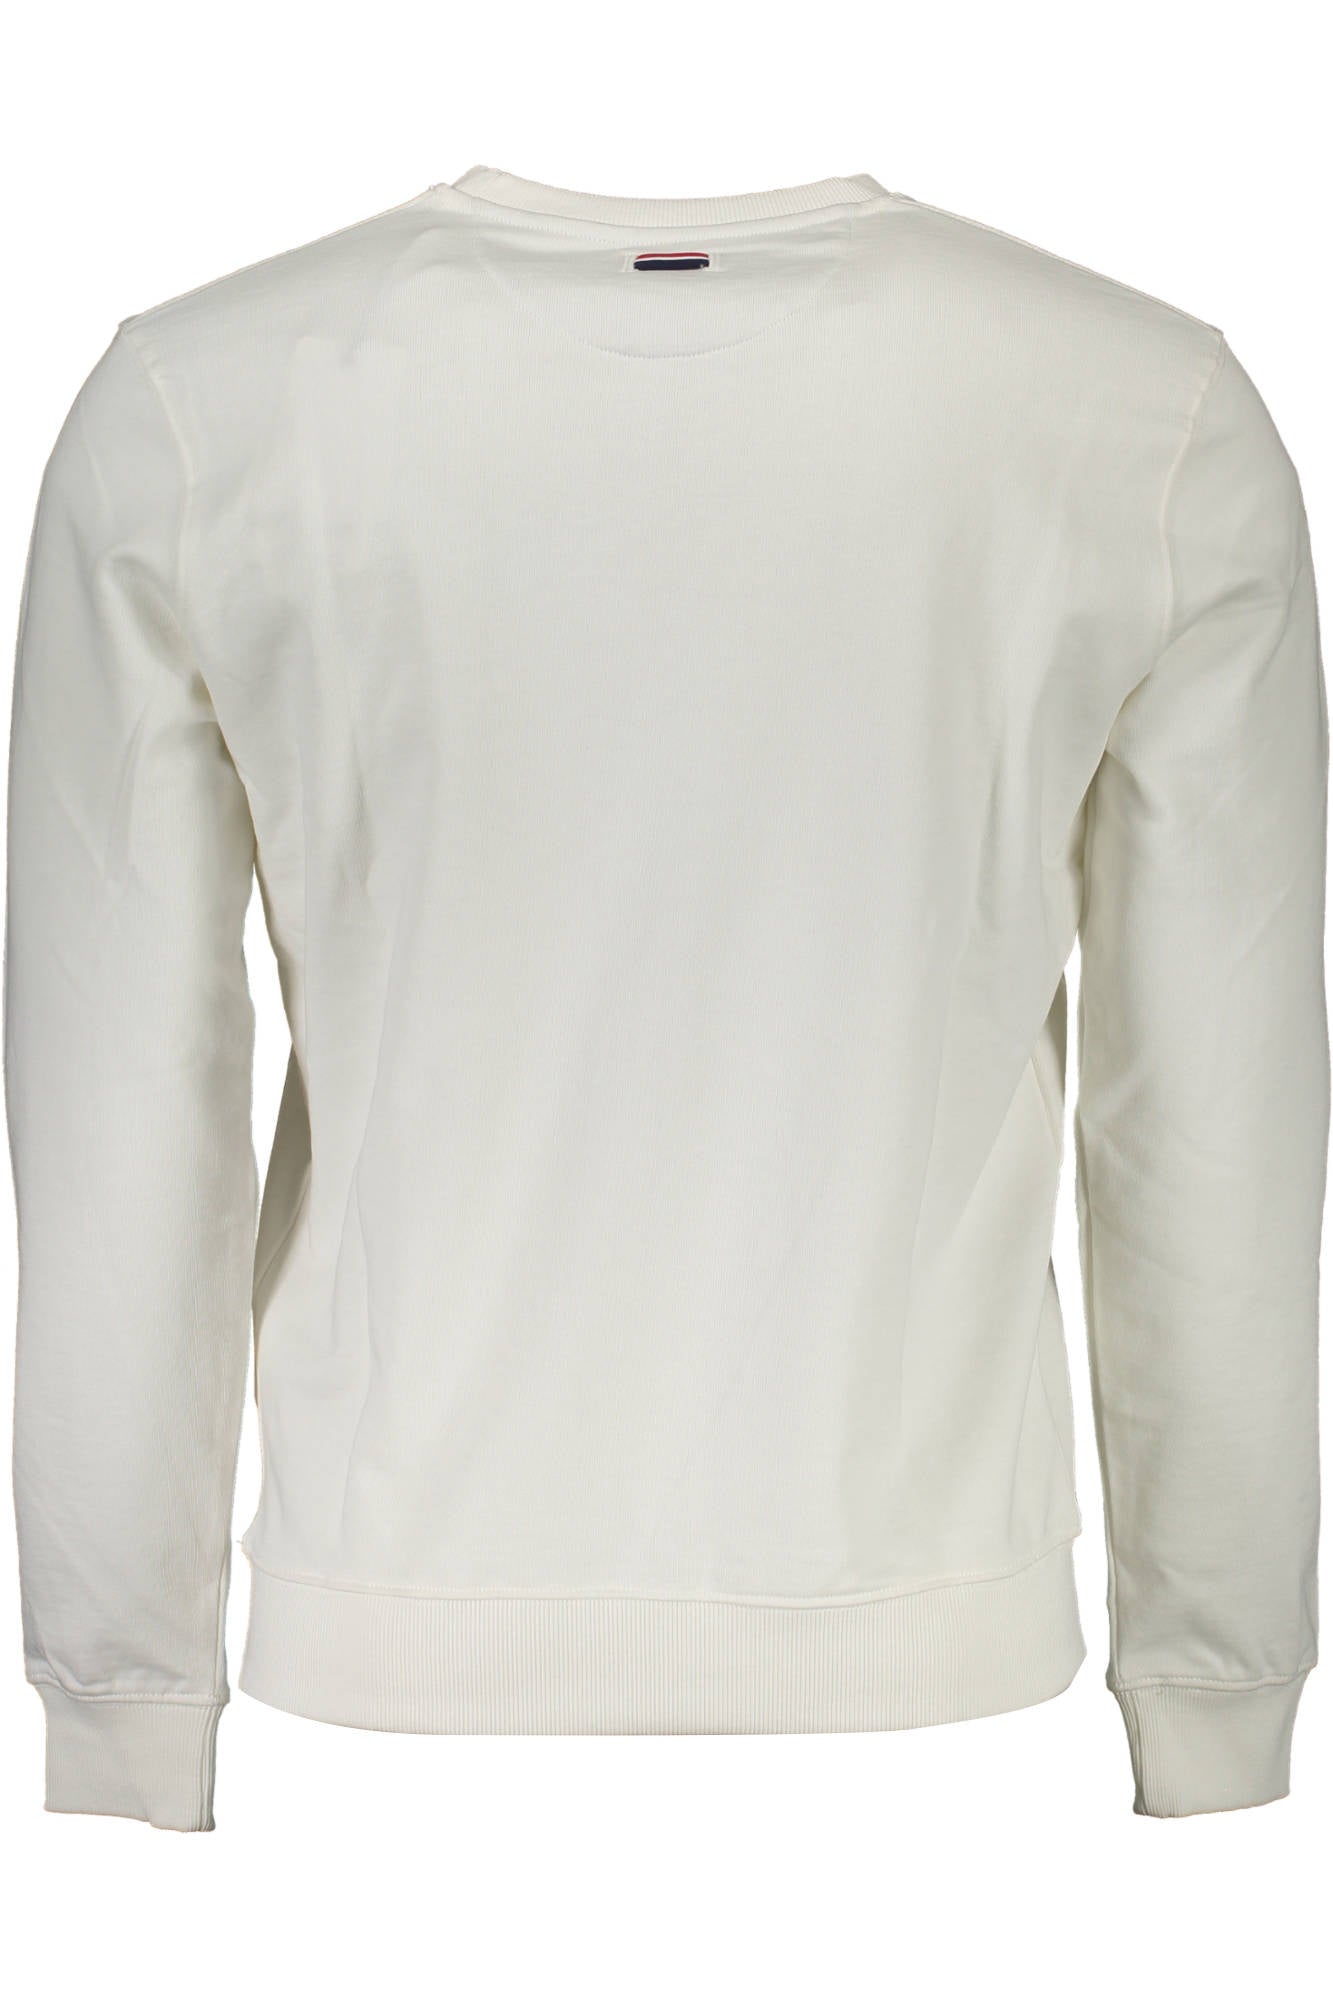 U.S. POLO ASSN. White Sweater - Fizigo